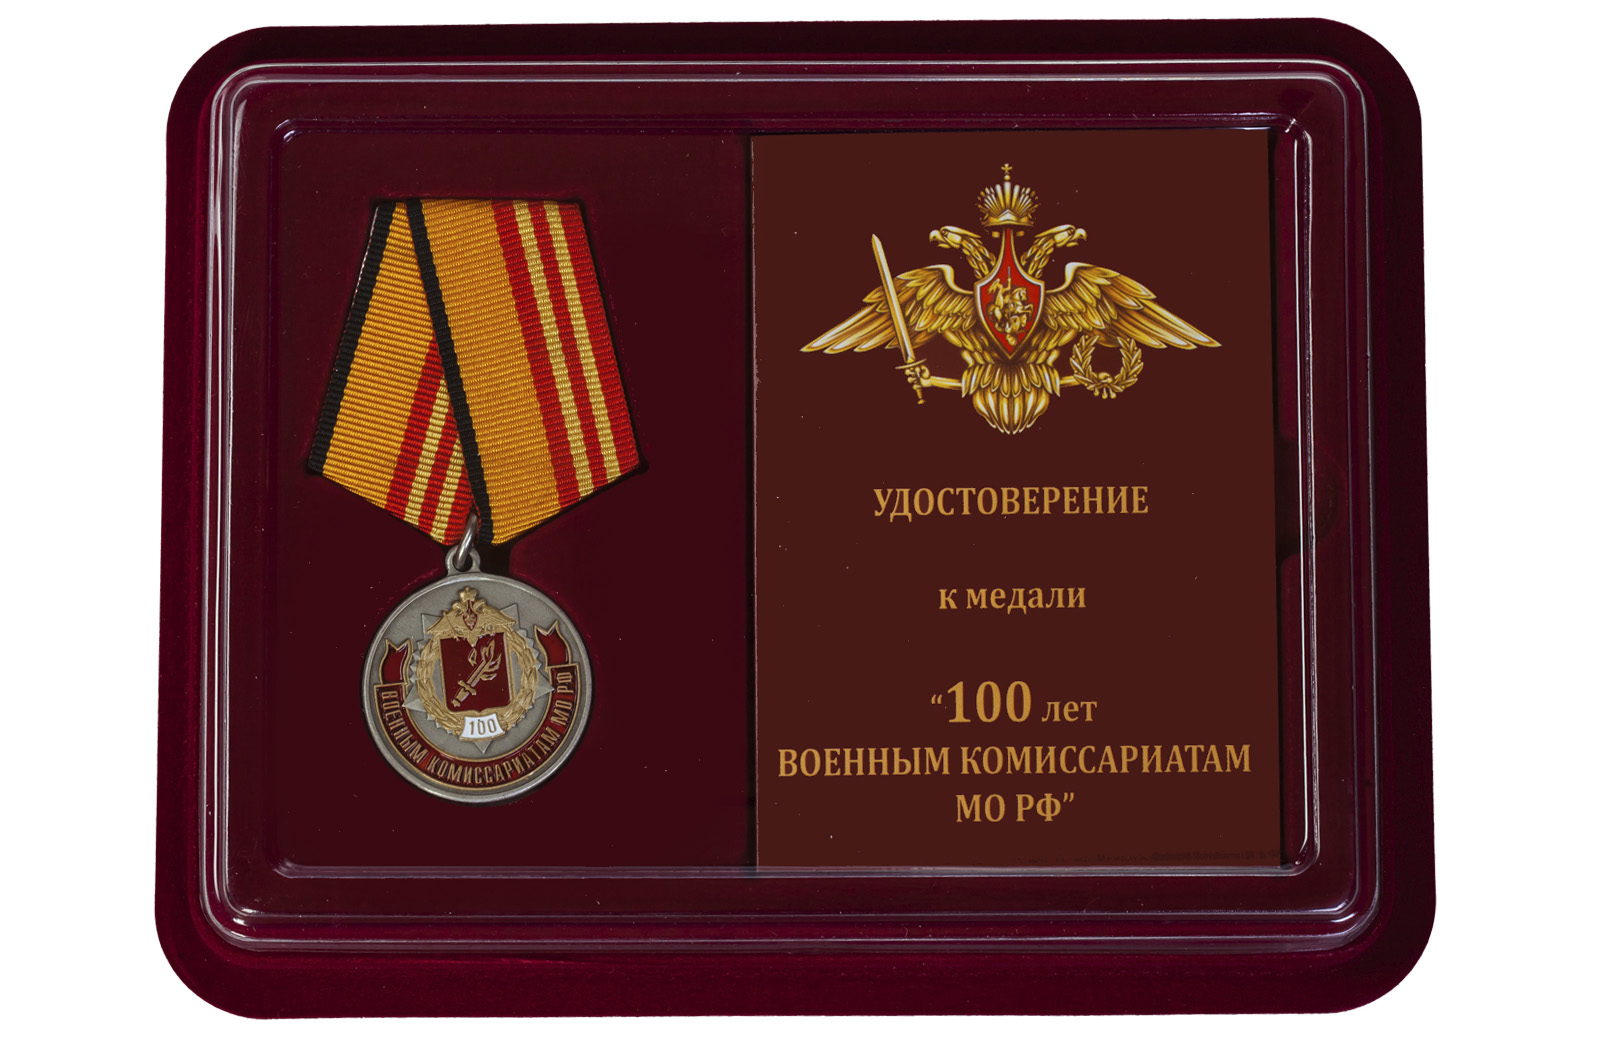 Купить юбилейную медаль 100 лет Военным комиссариатам МО РФ по лучшей цене